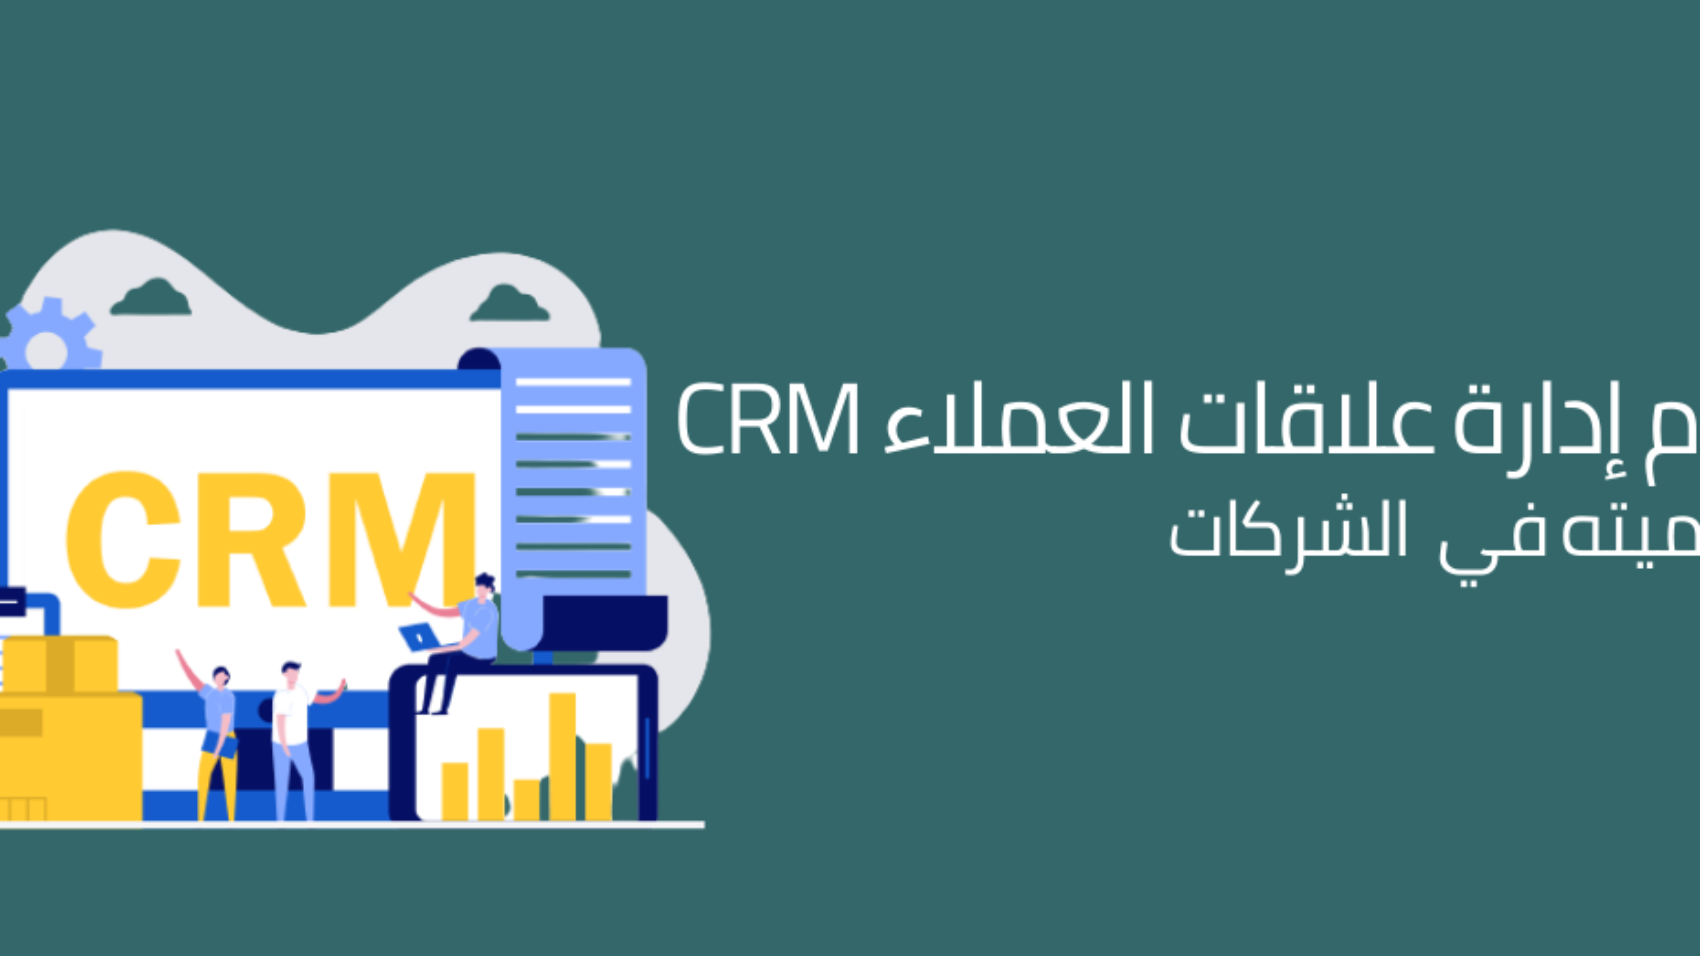 نظام ادارة علاقات العملاء CRM وأهميته في الشركات